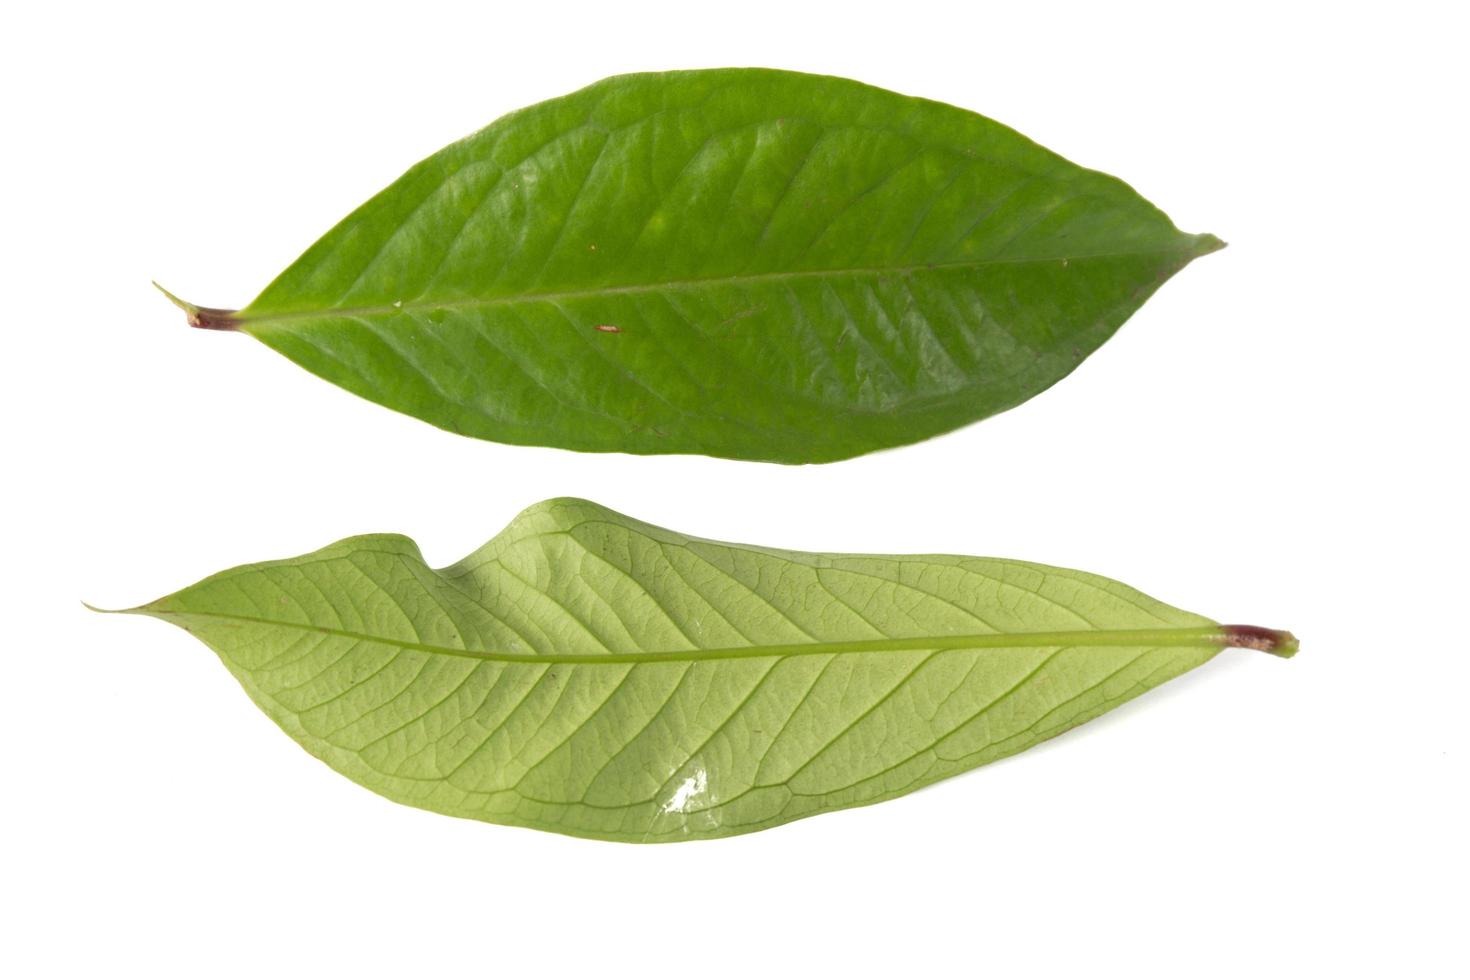 Guavenblatt isoliert auf weißem Hintergrund foto